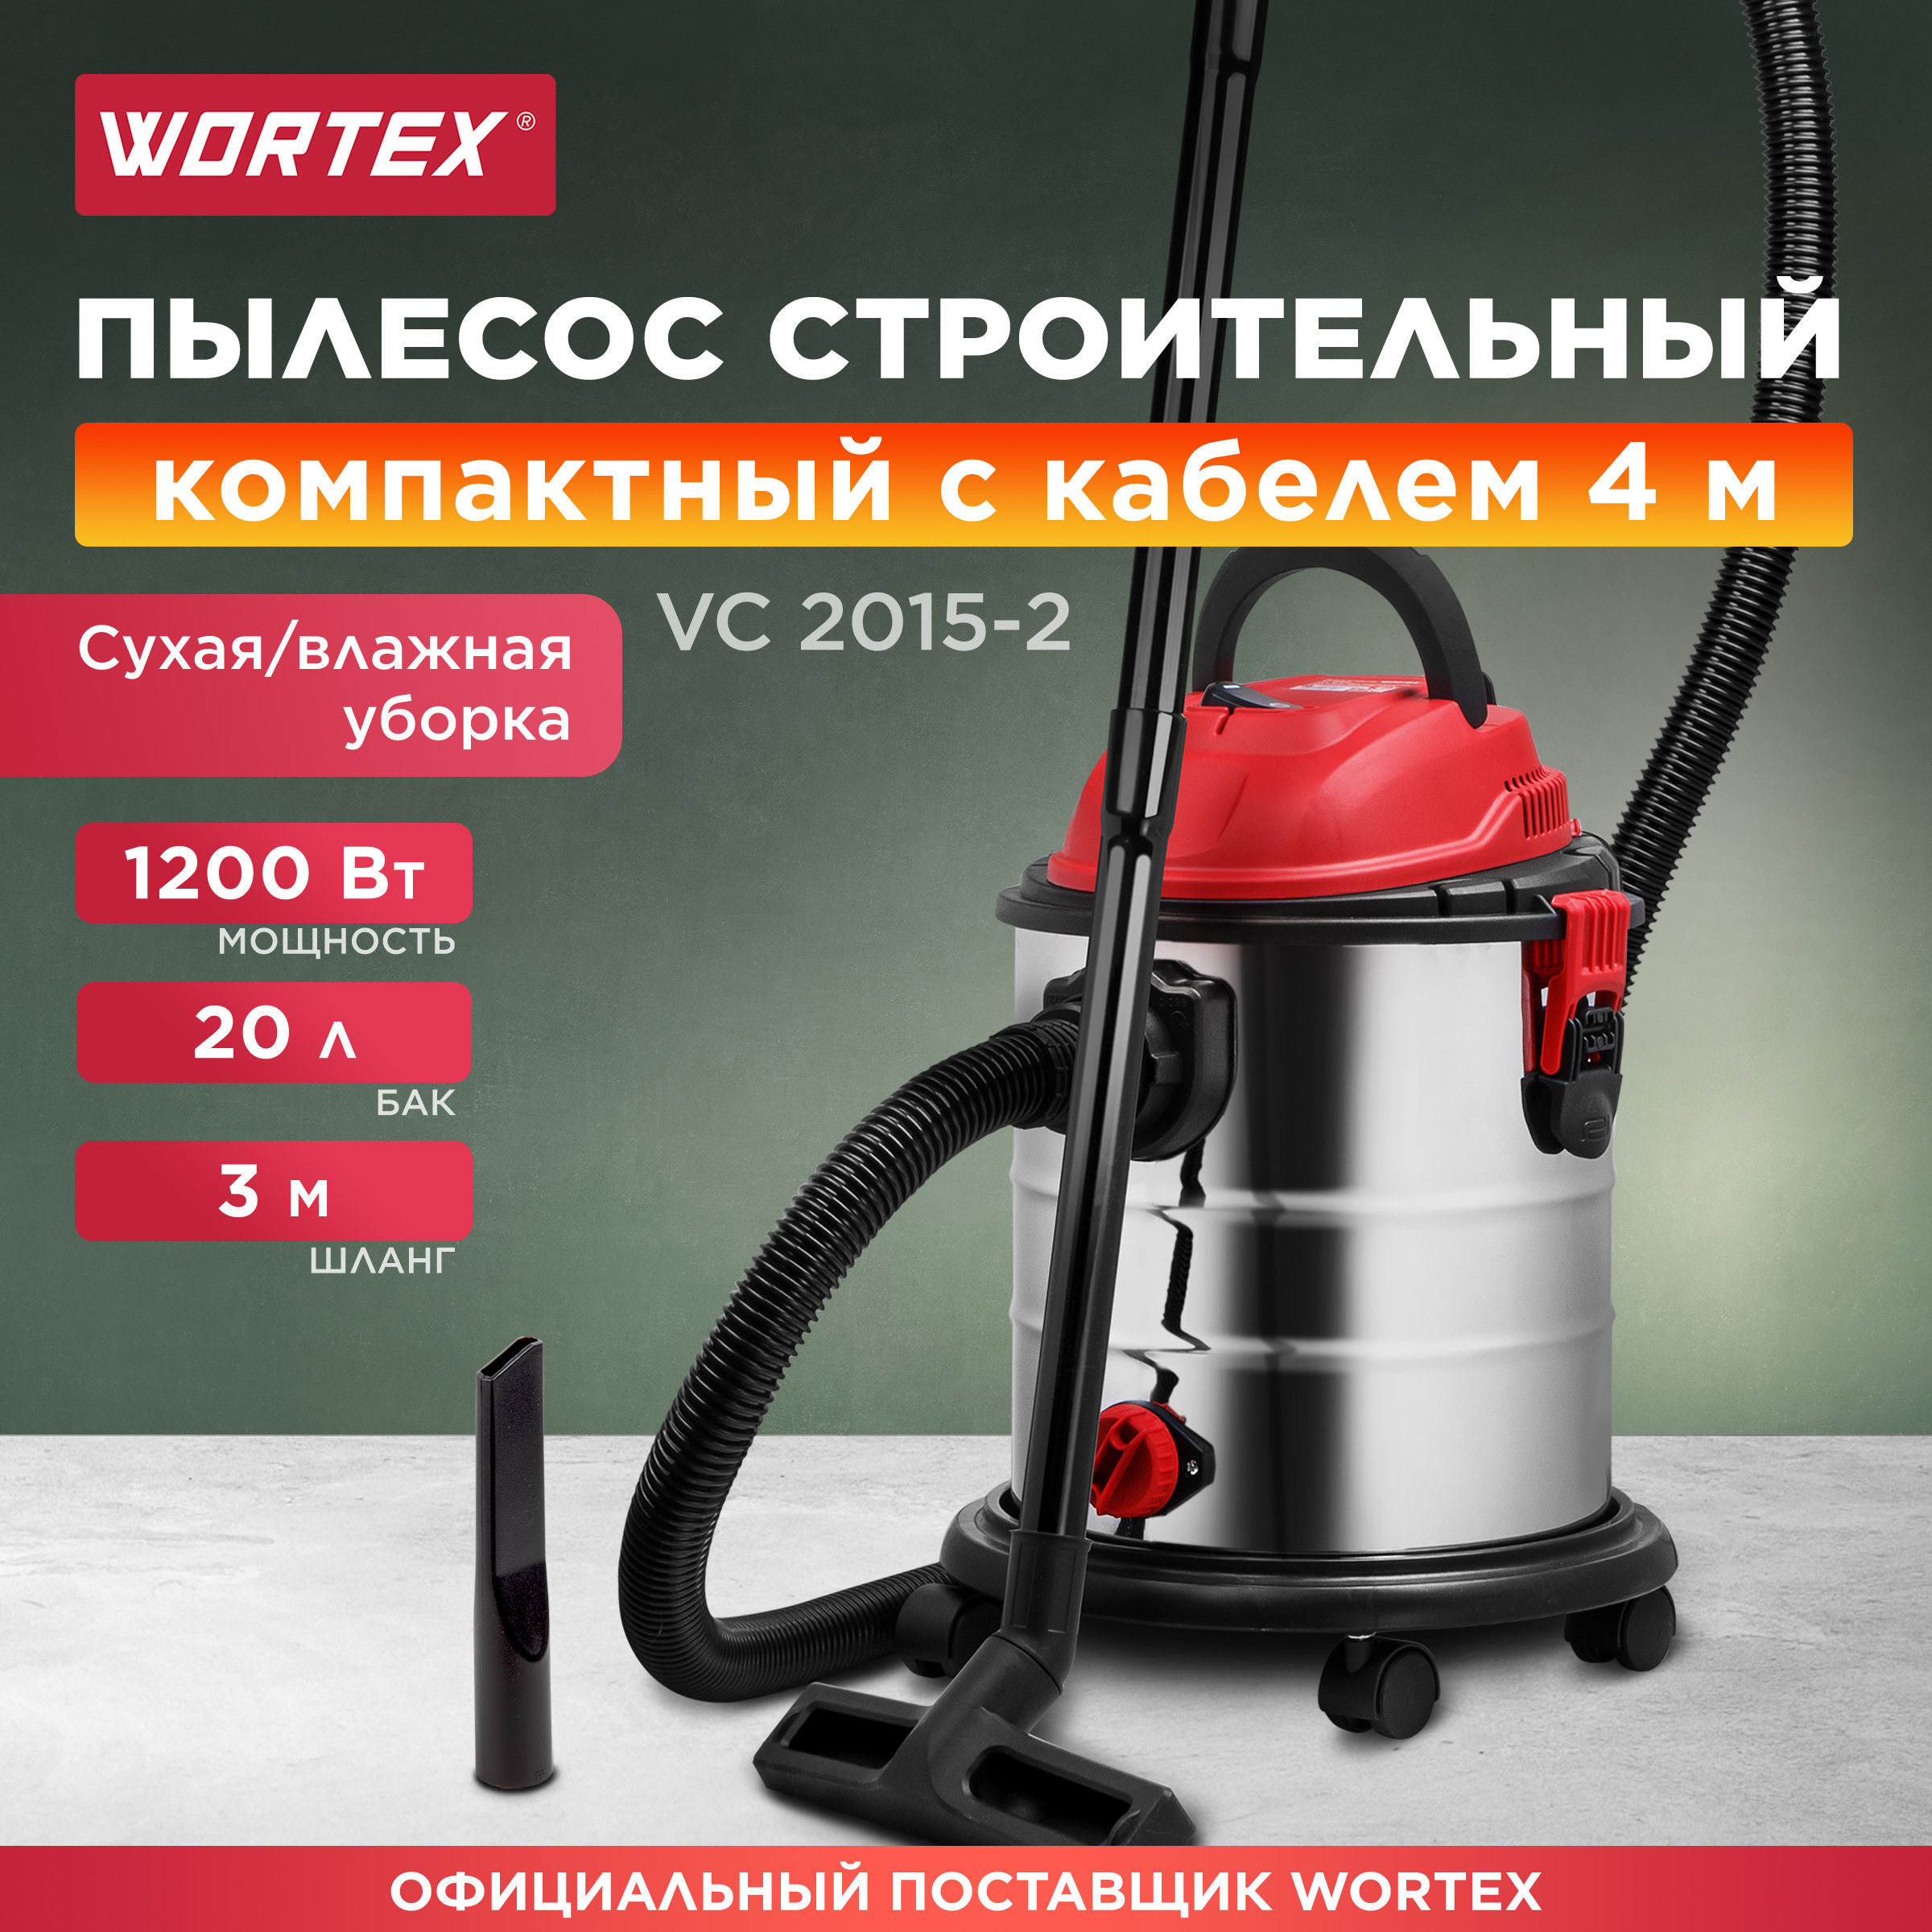 Пылесос строительный WORTEX VC 2015-2 WS (1329407) пылесос автомобильный cartage cyclone turbo 100 вт 12 в 5 насадок красный